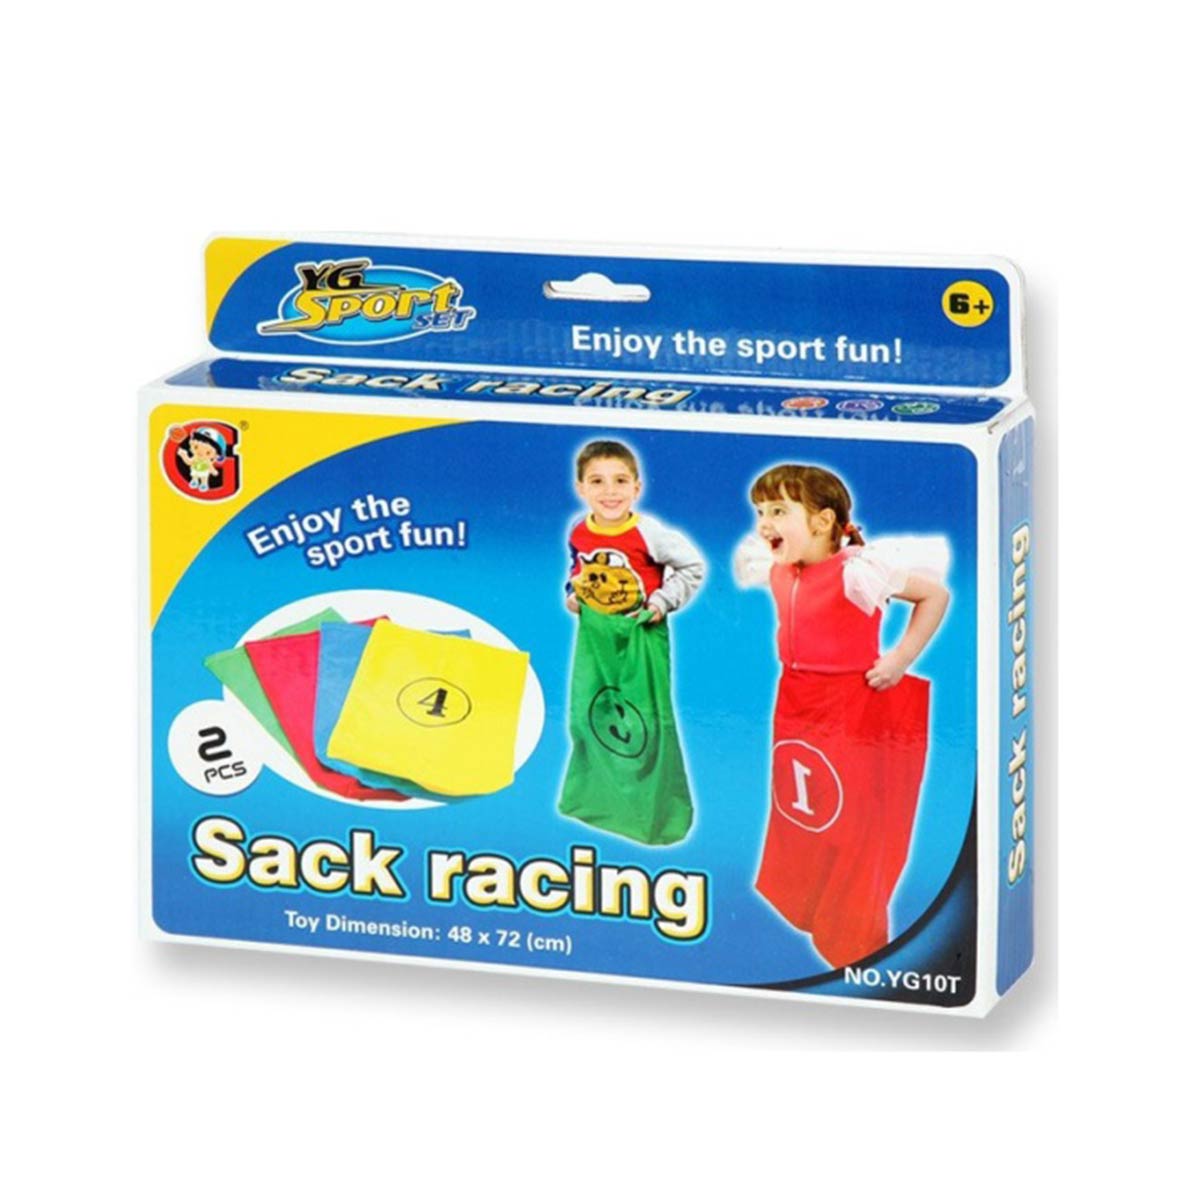 Sack Racing